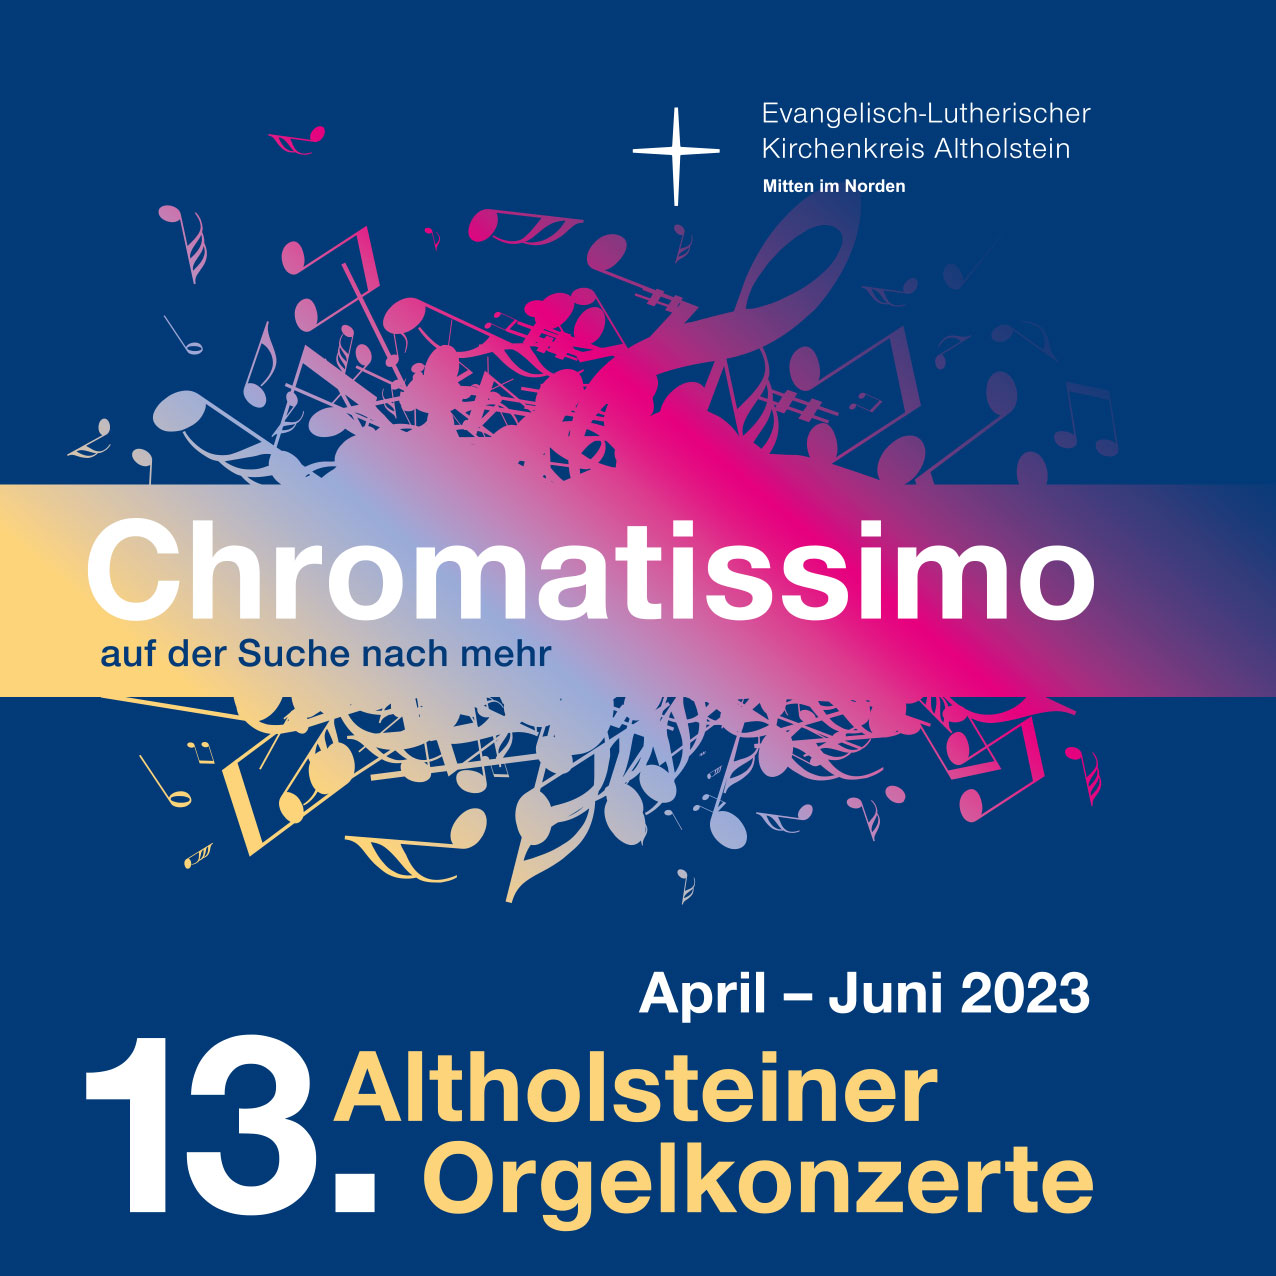 Motiv der Altholsteiner Orgelkonzerte 2023 - Chromatissimo